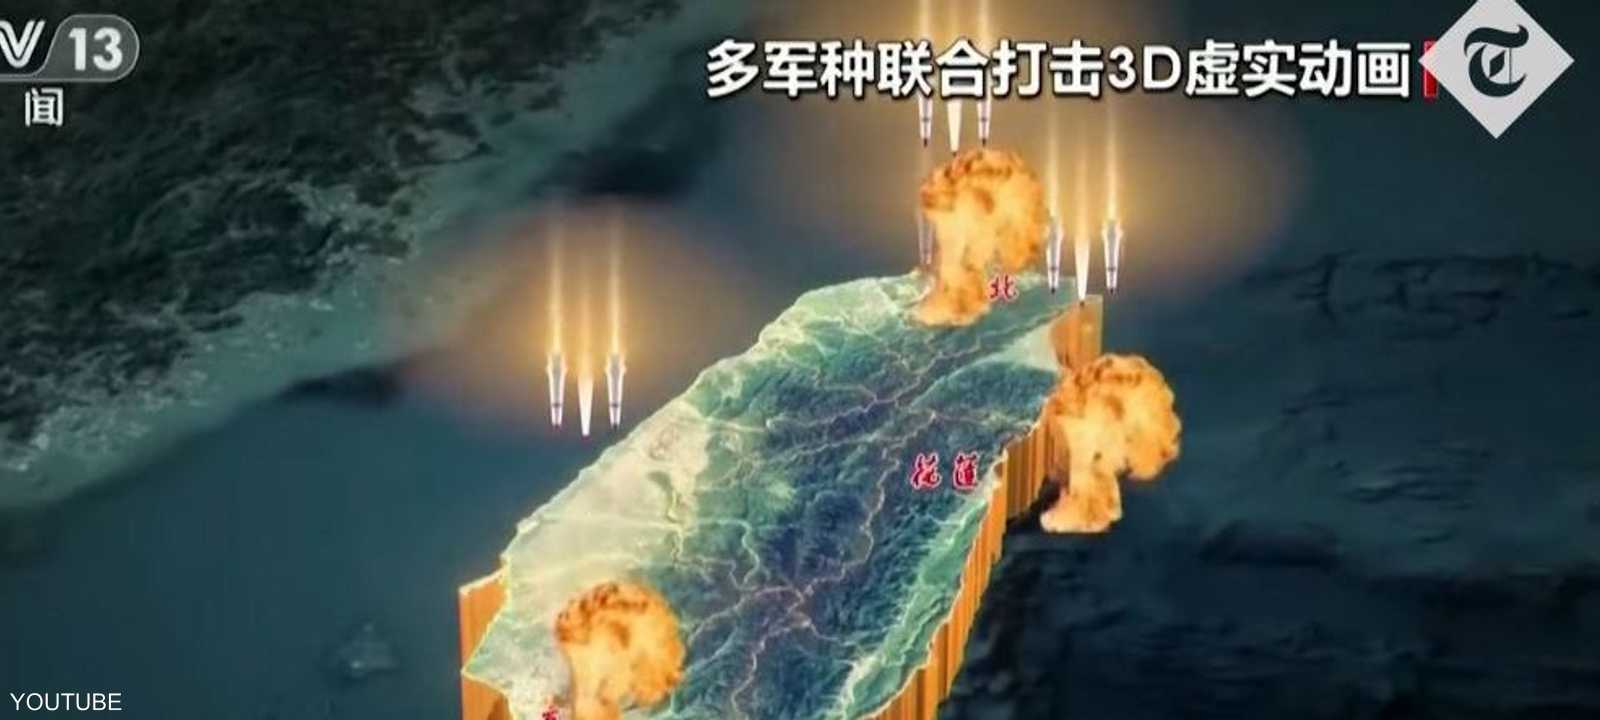 محاكاة لهجوم صيني على تايوان